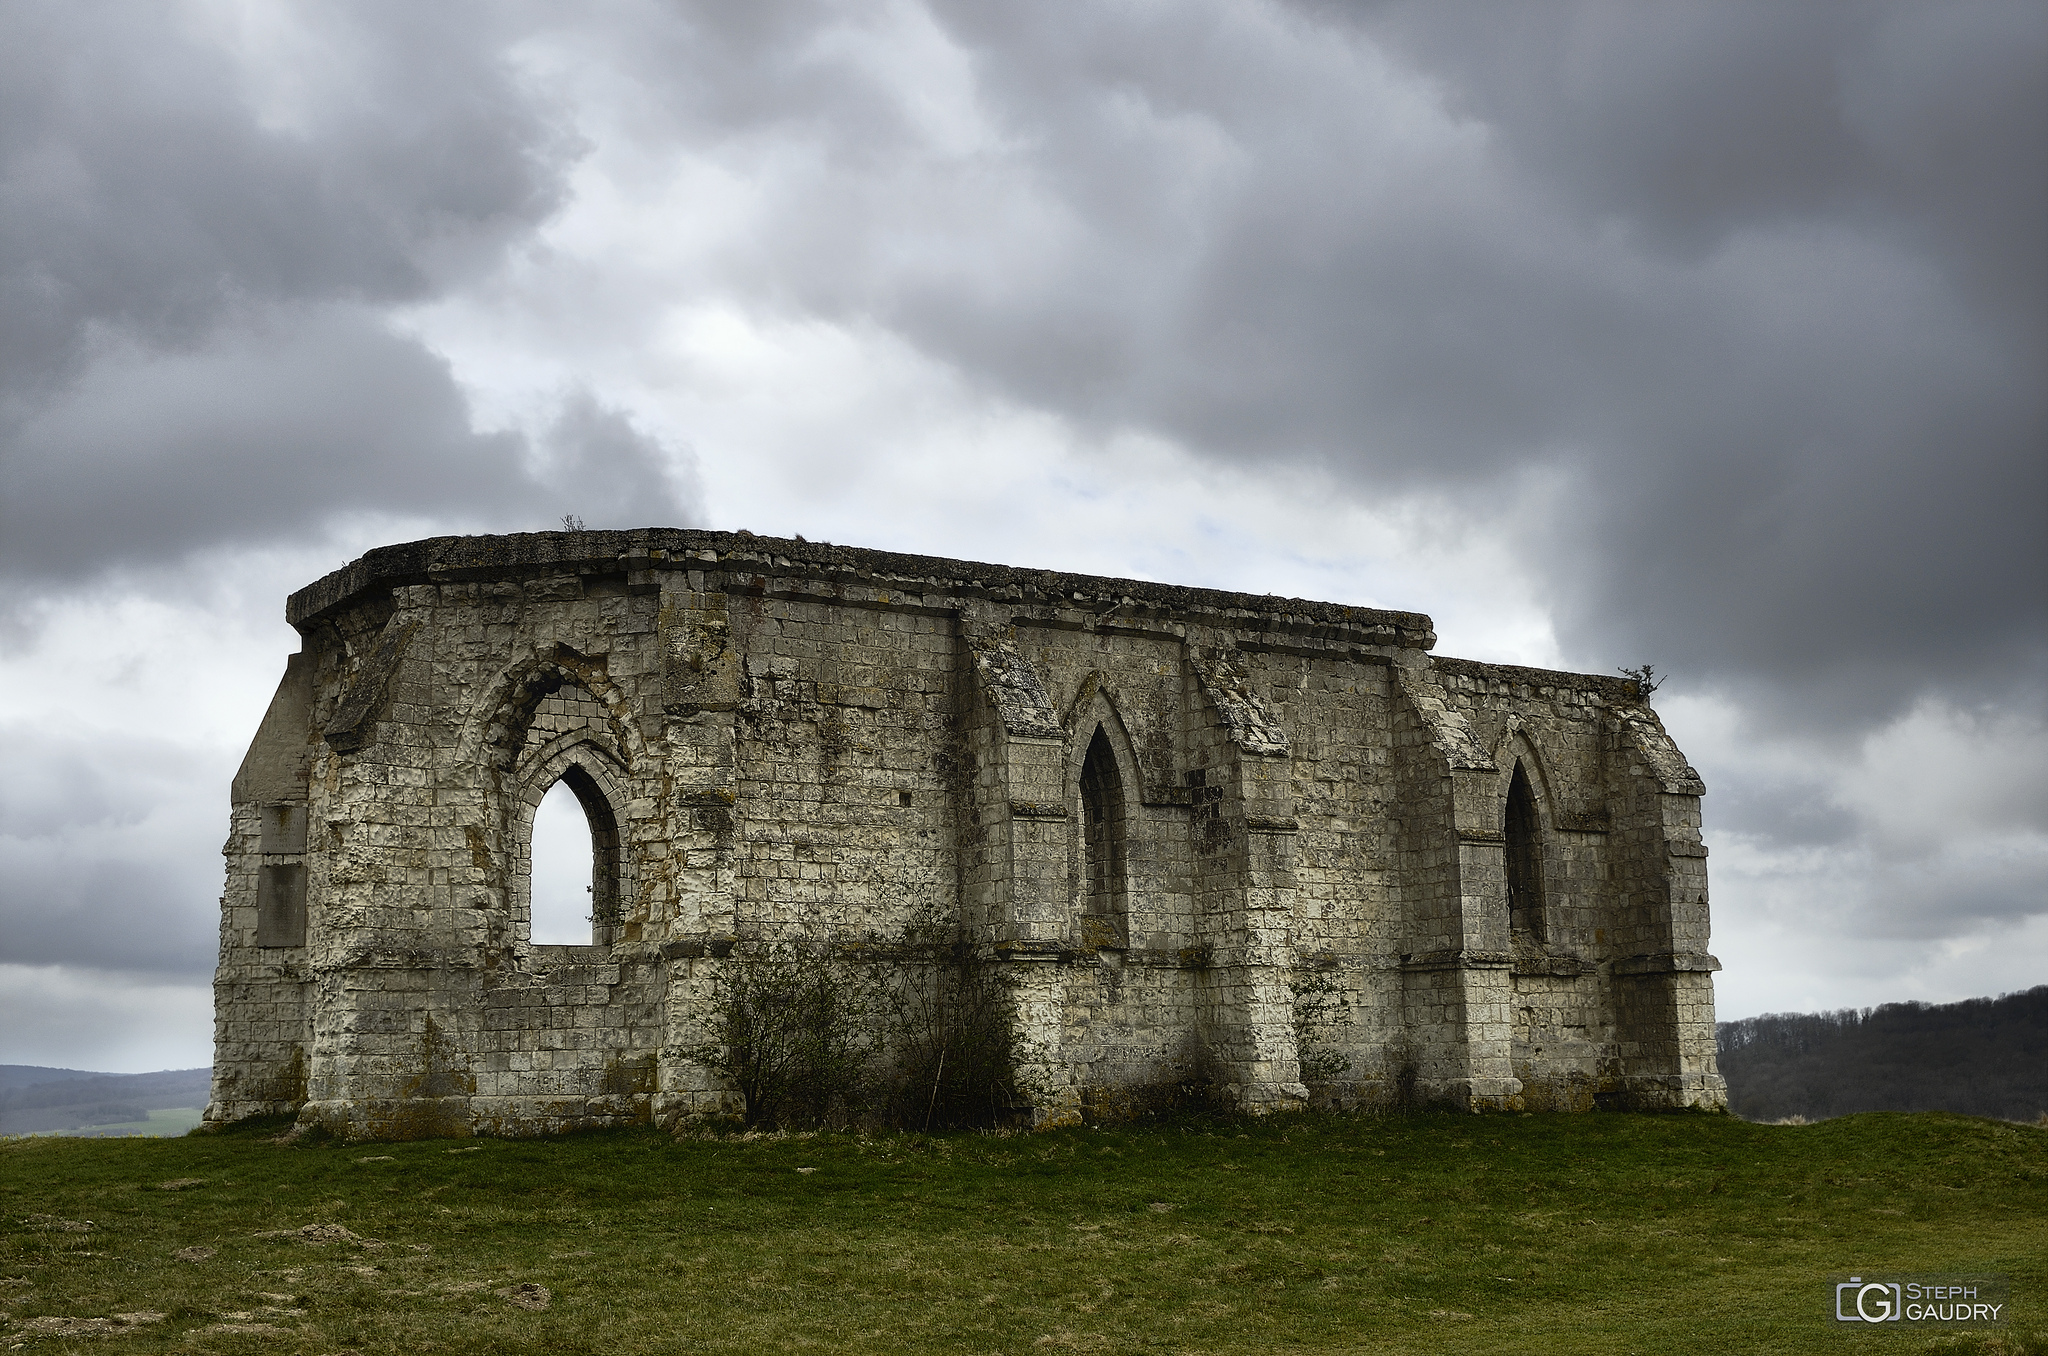 The ruins of the 13th century chapel of Saint Louis at Guémy [Cliquez pour lancer le diaporama]